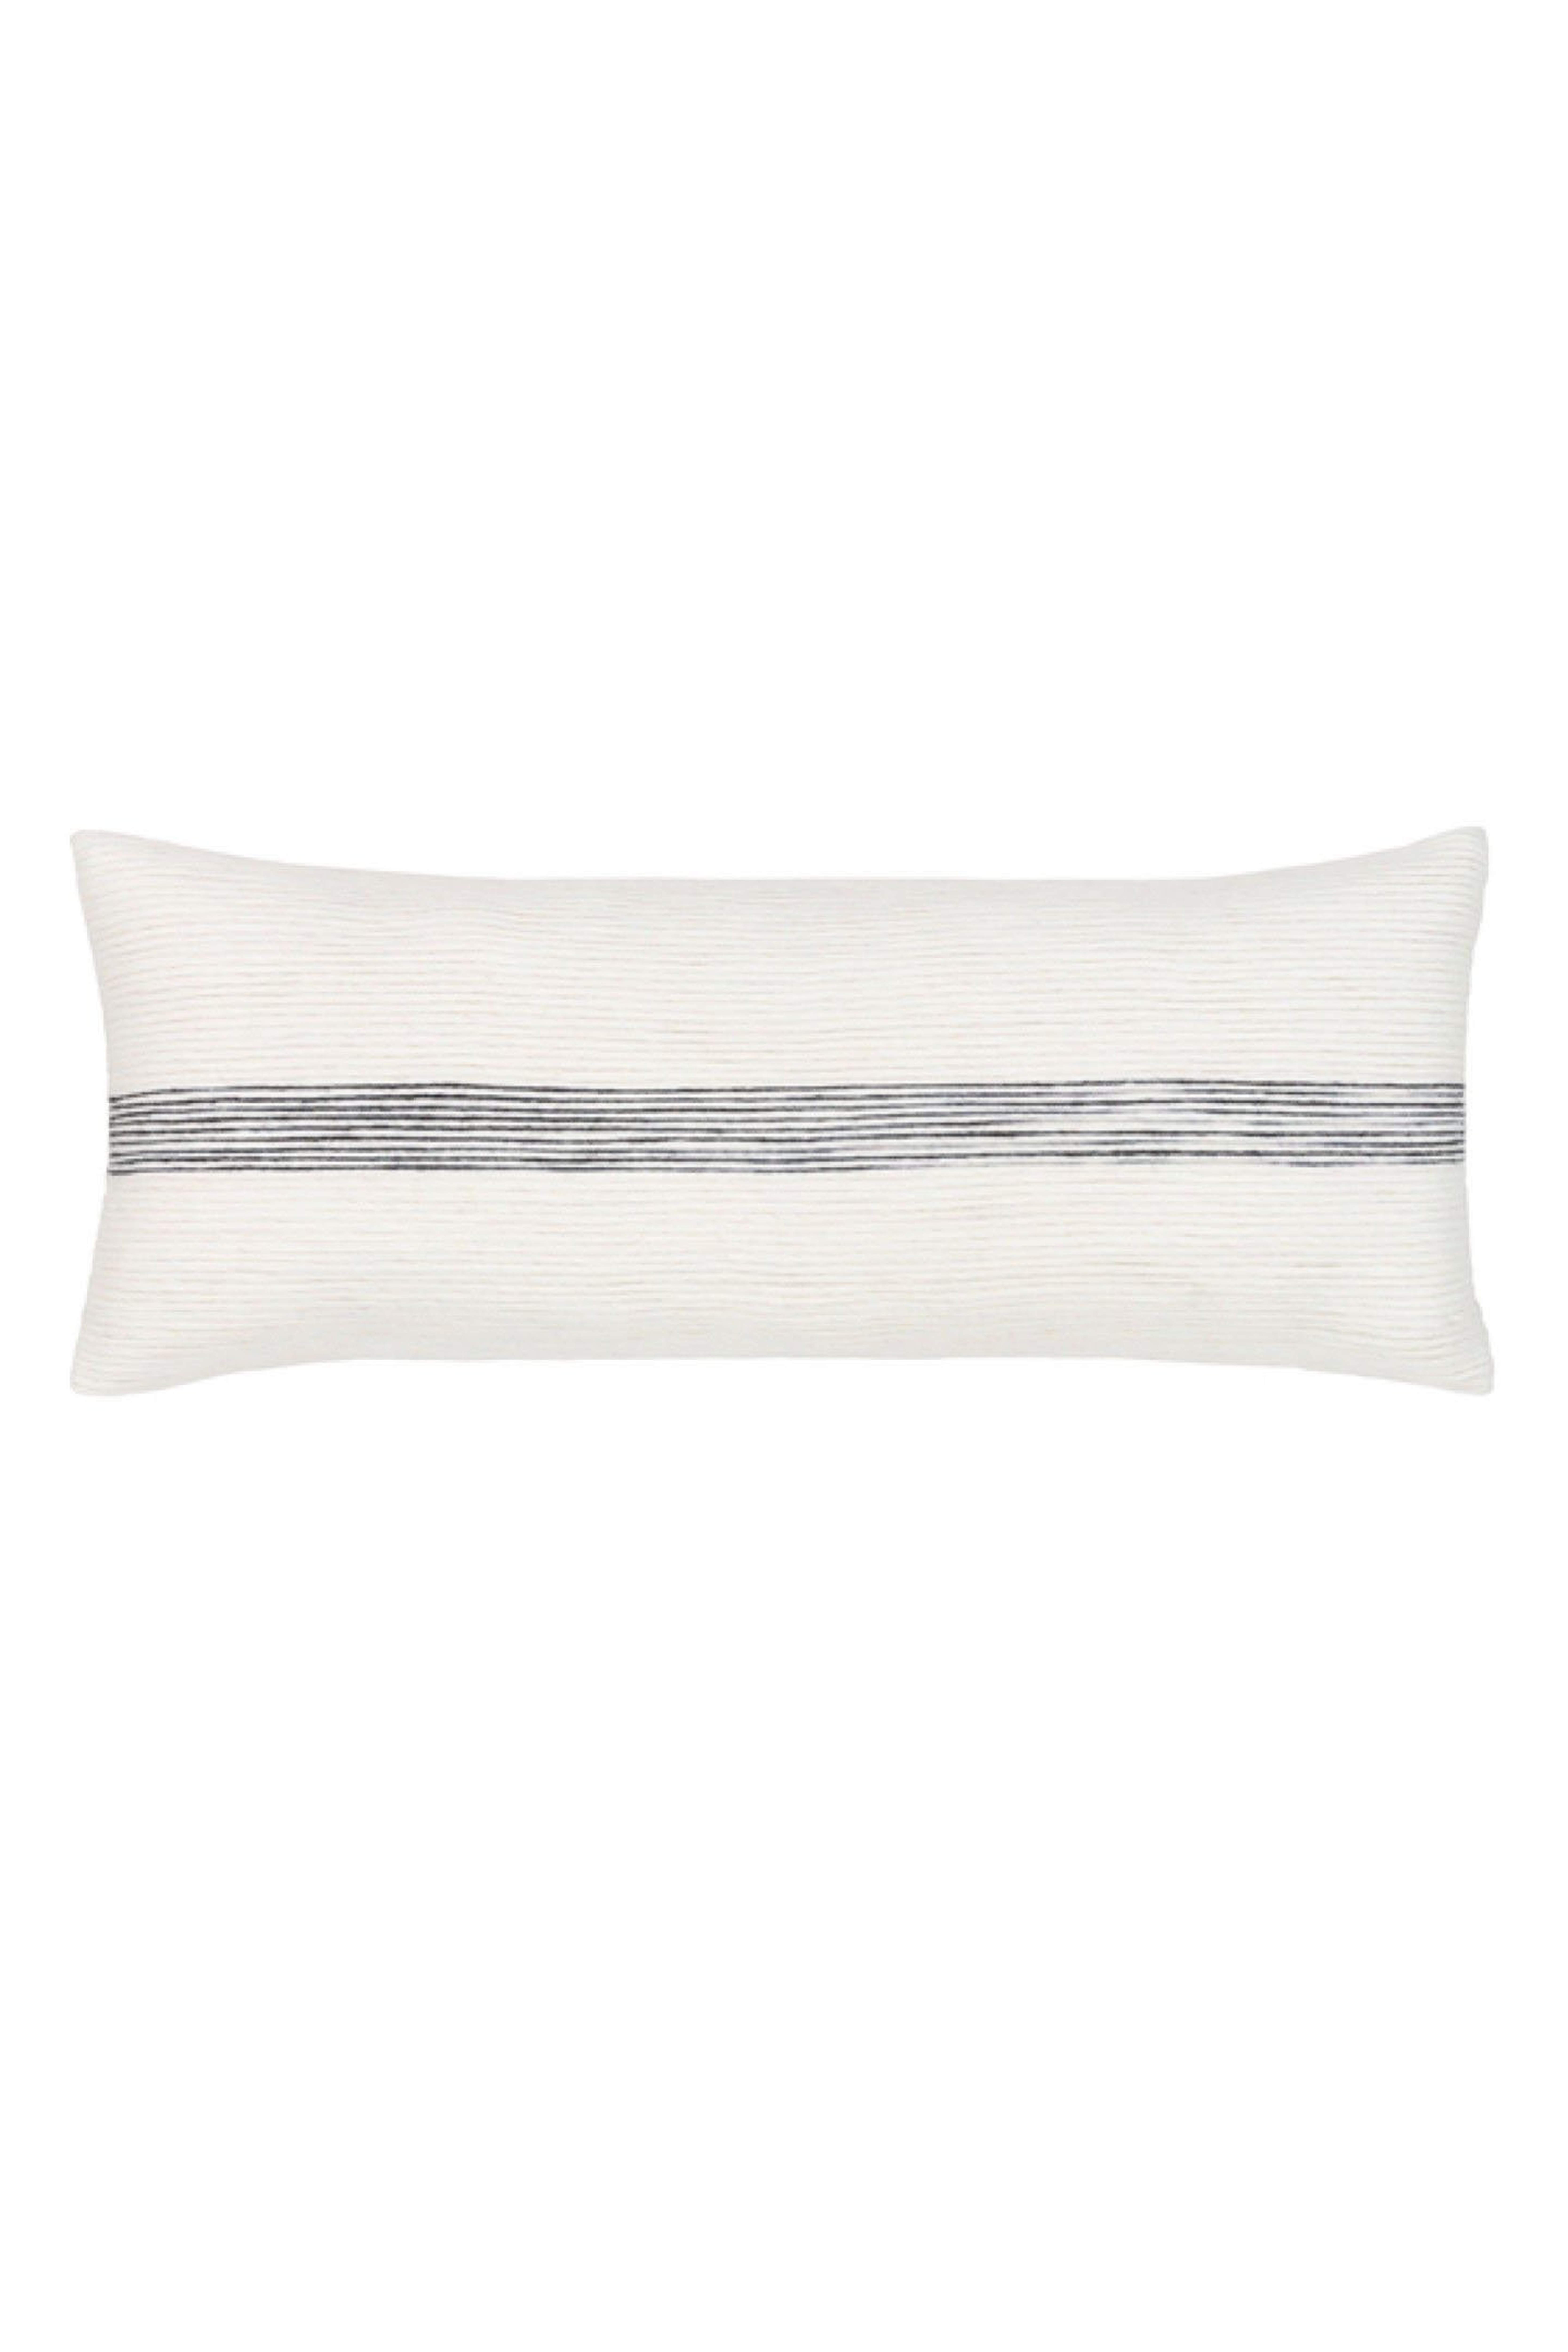 Burton Lumbar Pillow Cover - Cove Goods